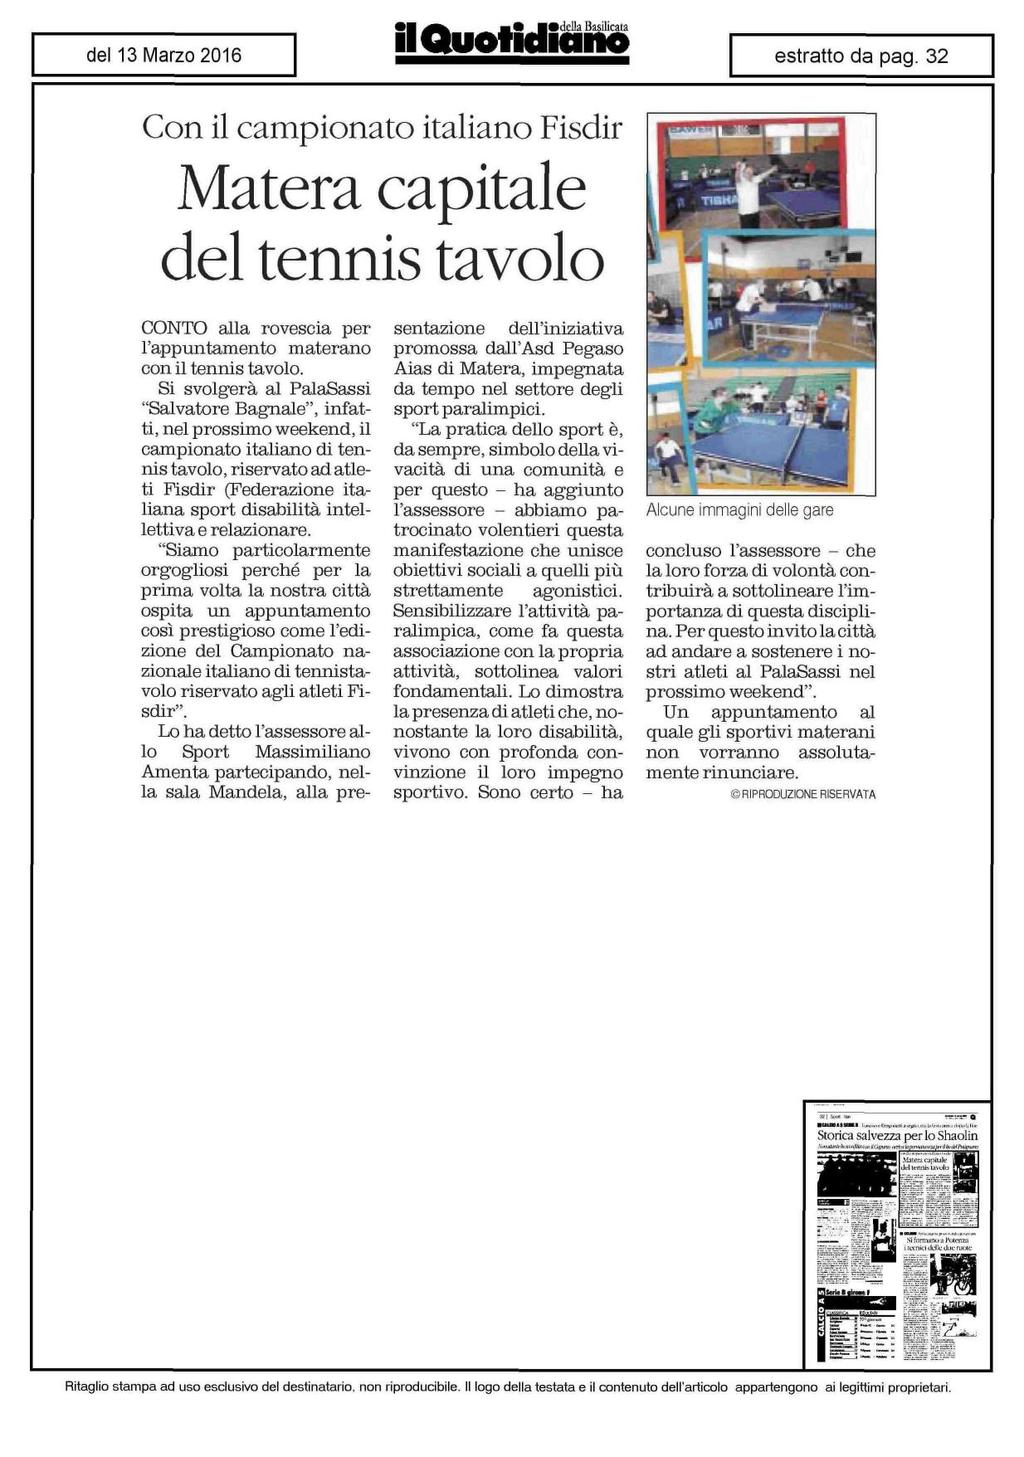 Con il campionato italiano Fisdir Matera capitale del tennis tavolo CONTO alla rovescia per l'appuntamento materano con il tennis tavolo.